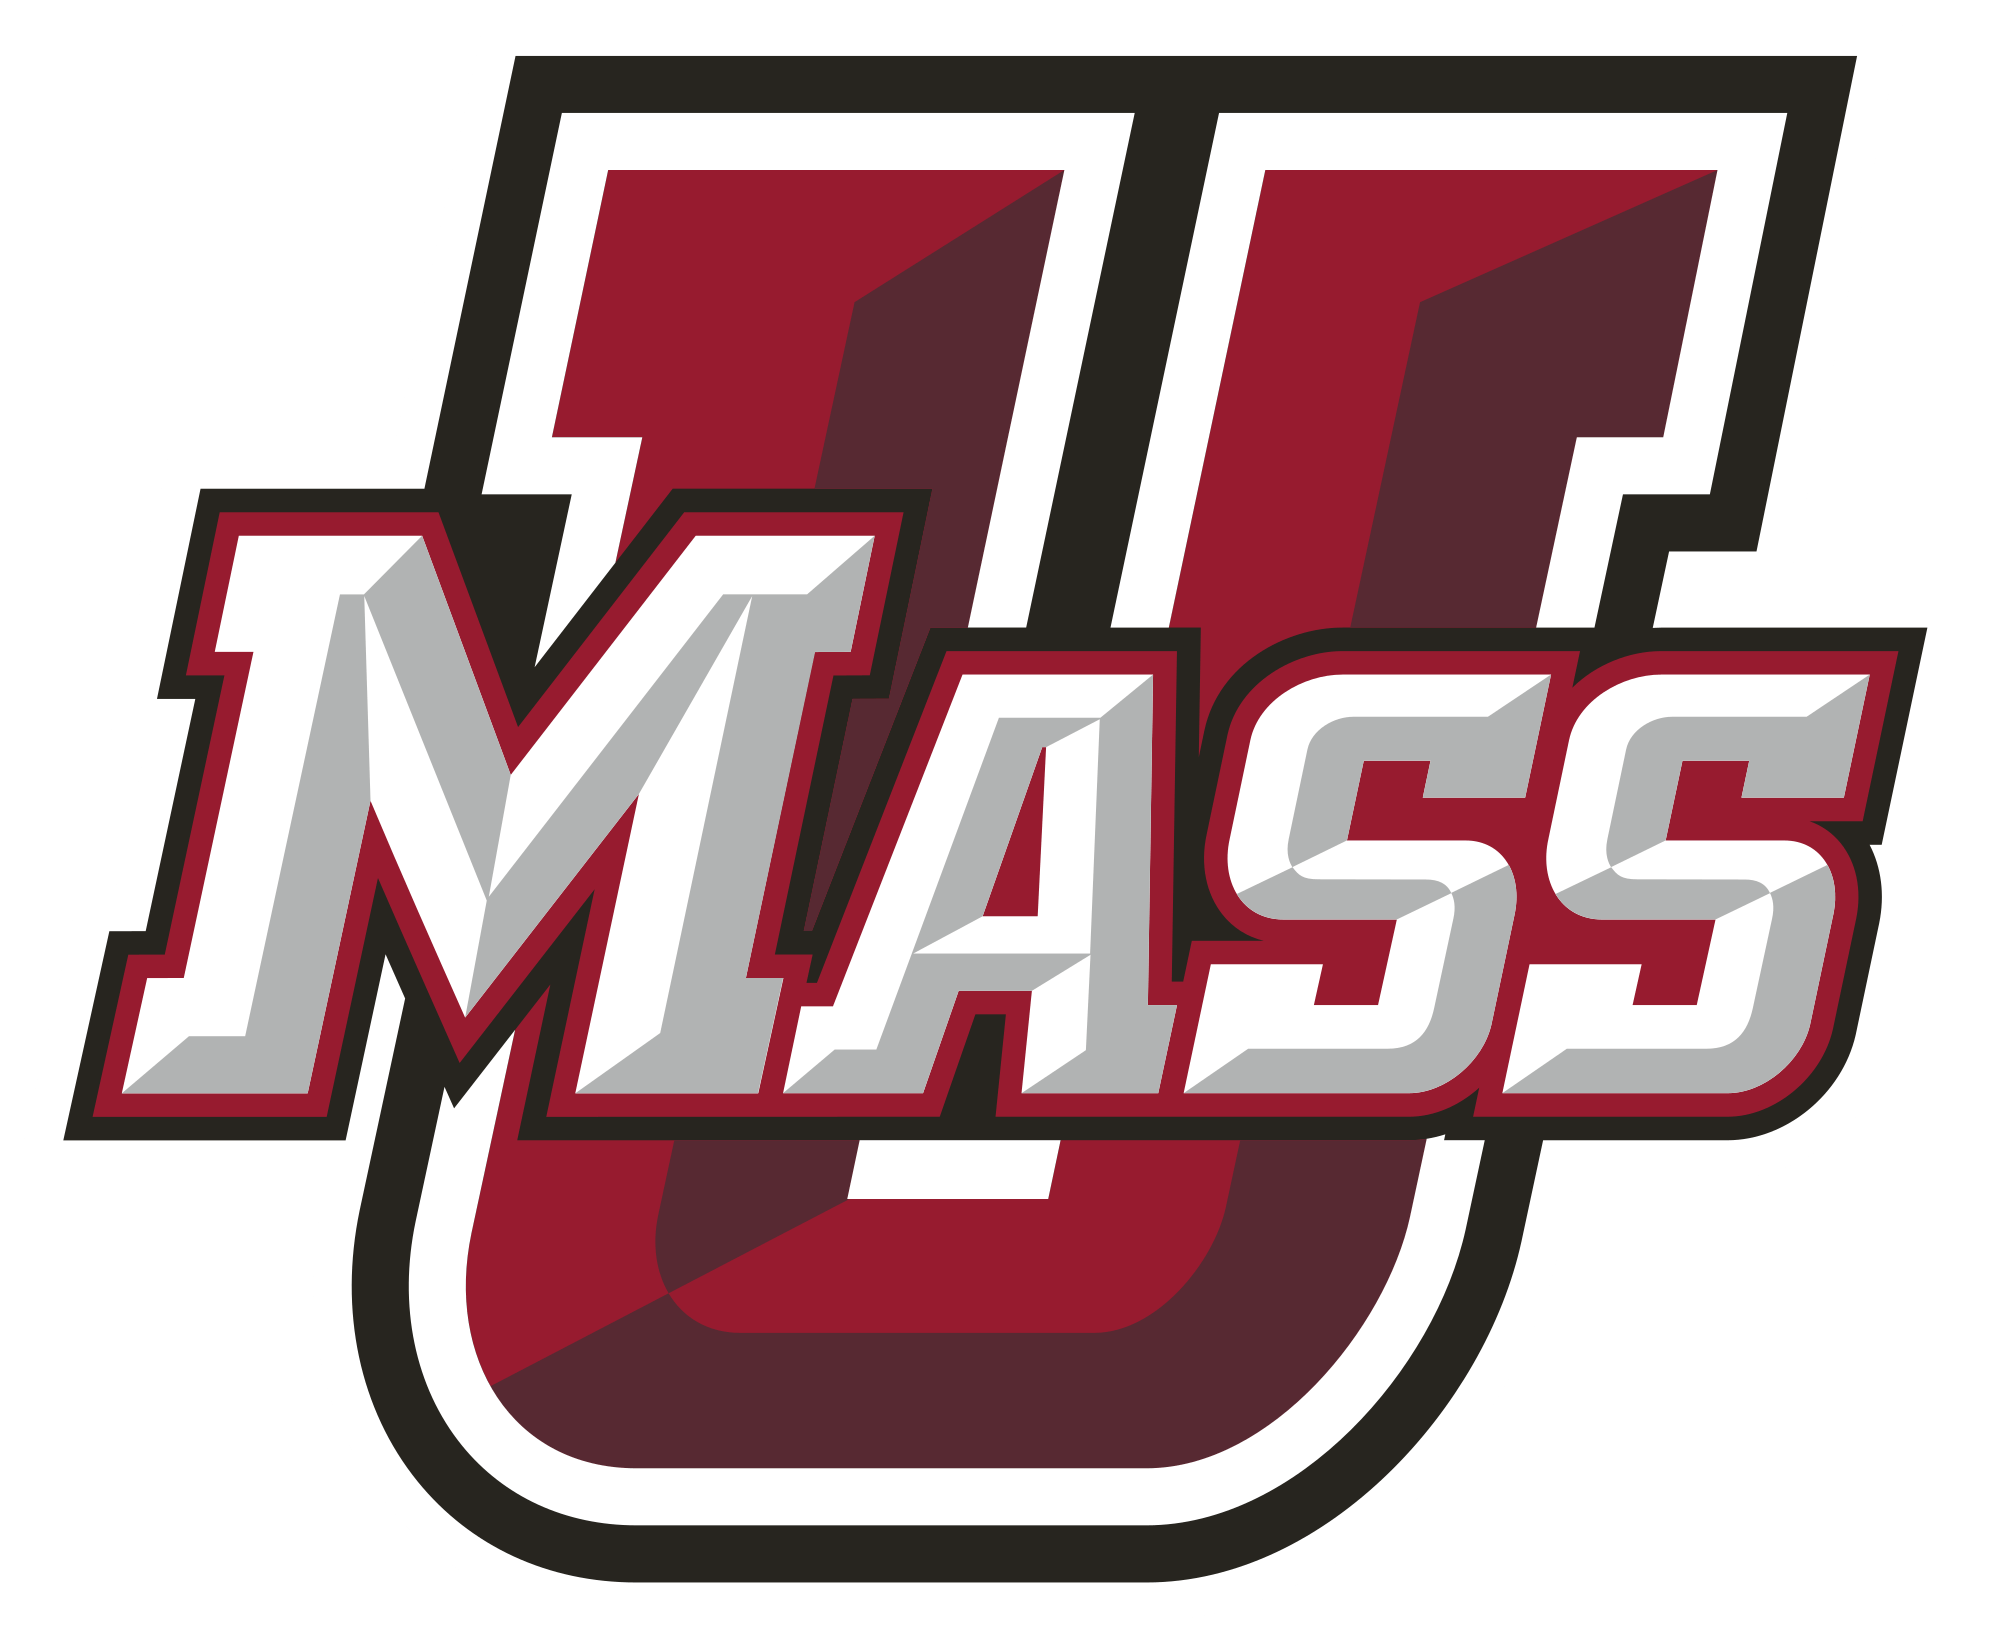 Amherst Logo - File:UMass Amherst Athletics logo.svg - Wikimedia Commons